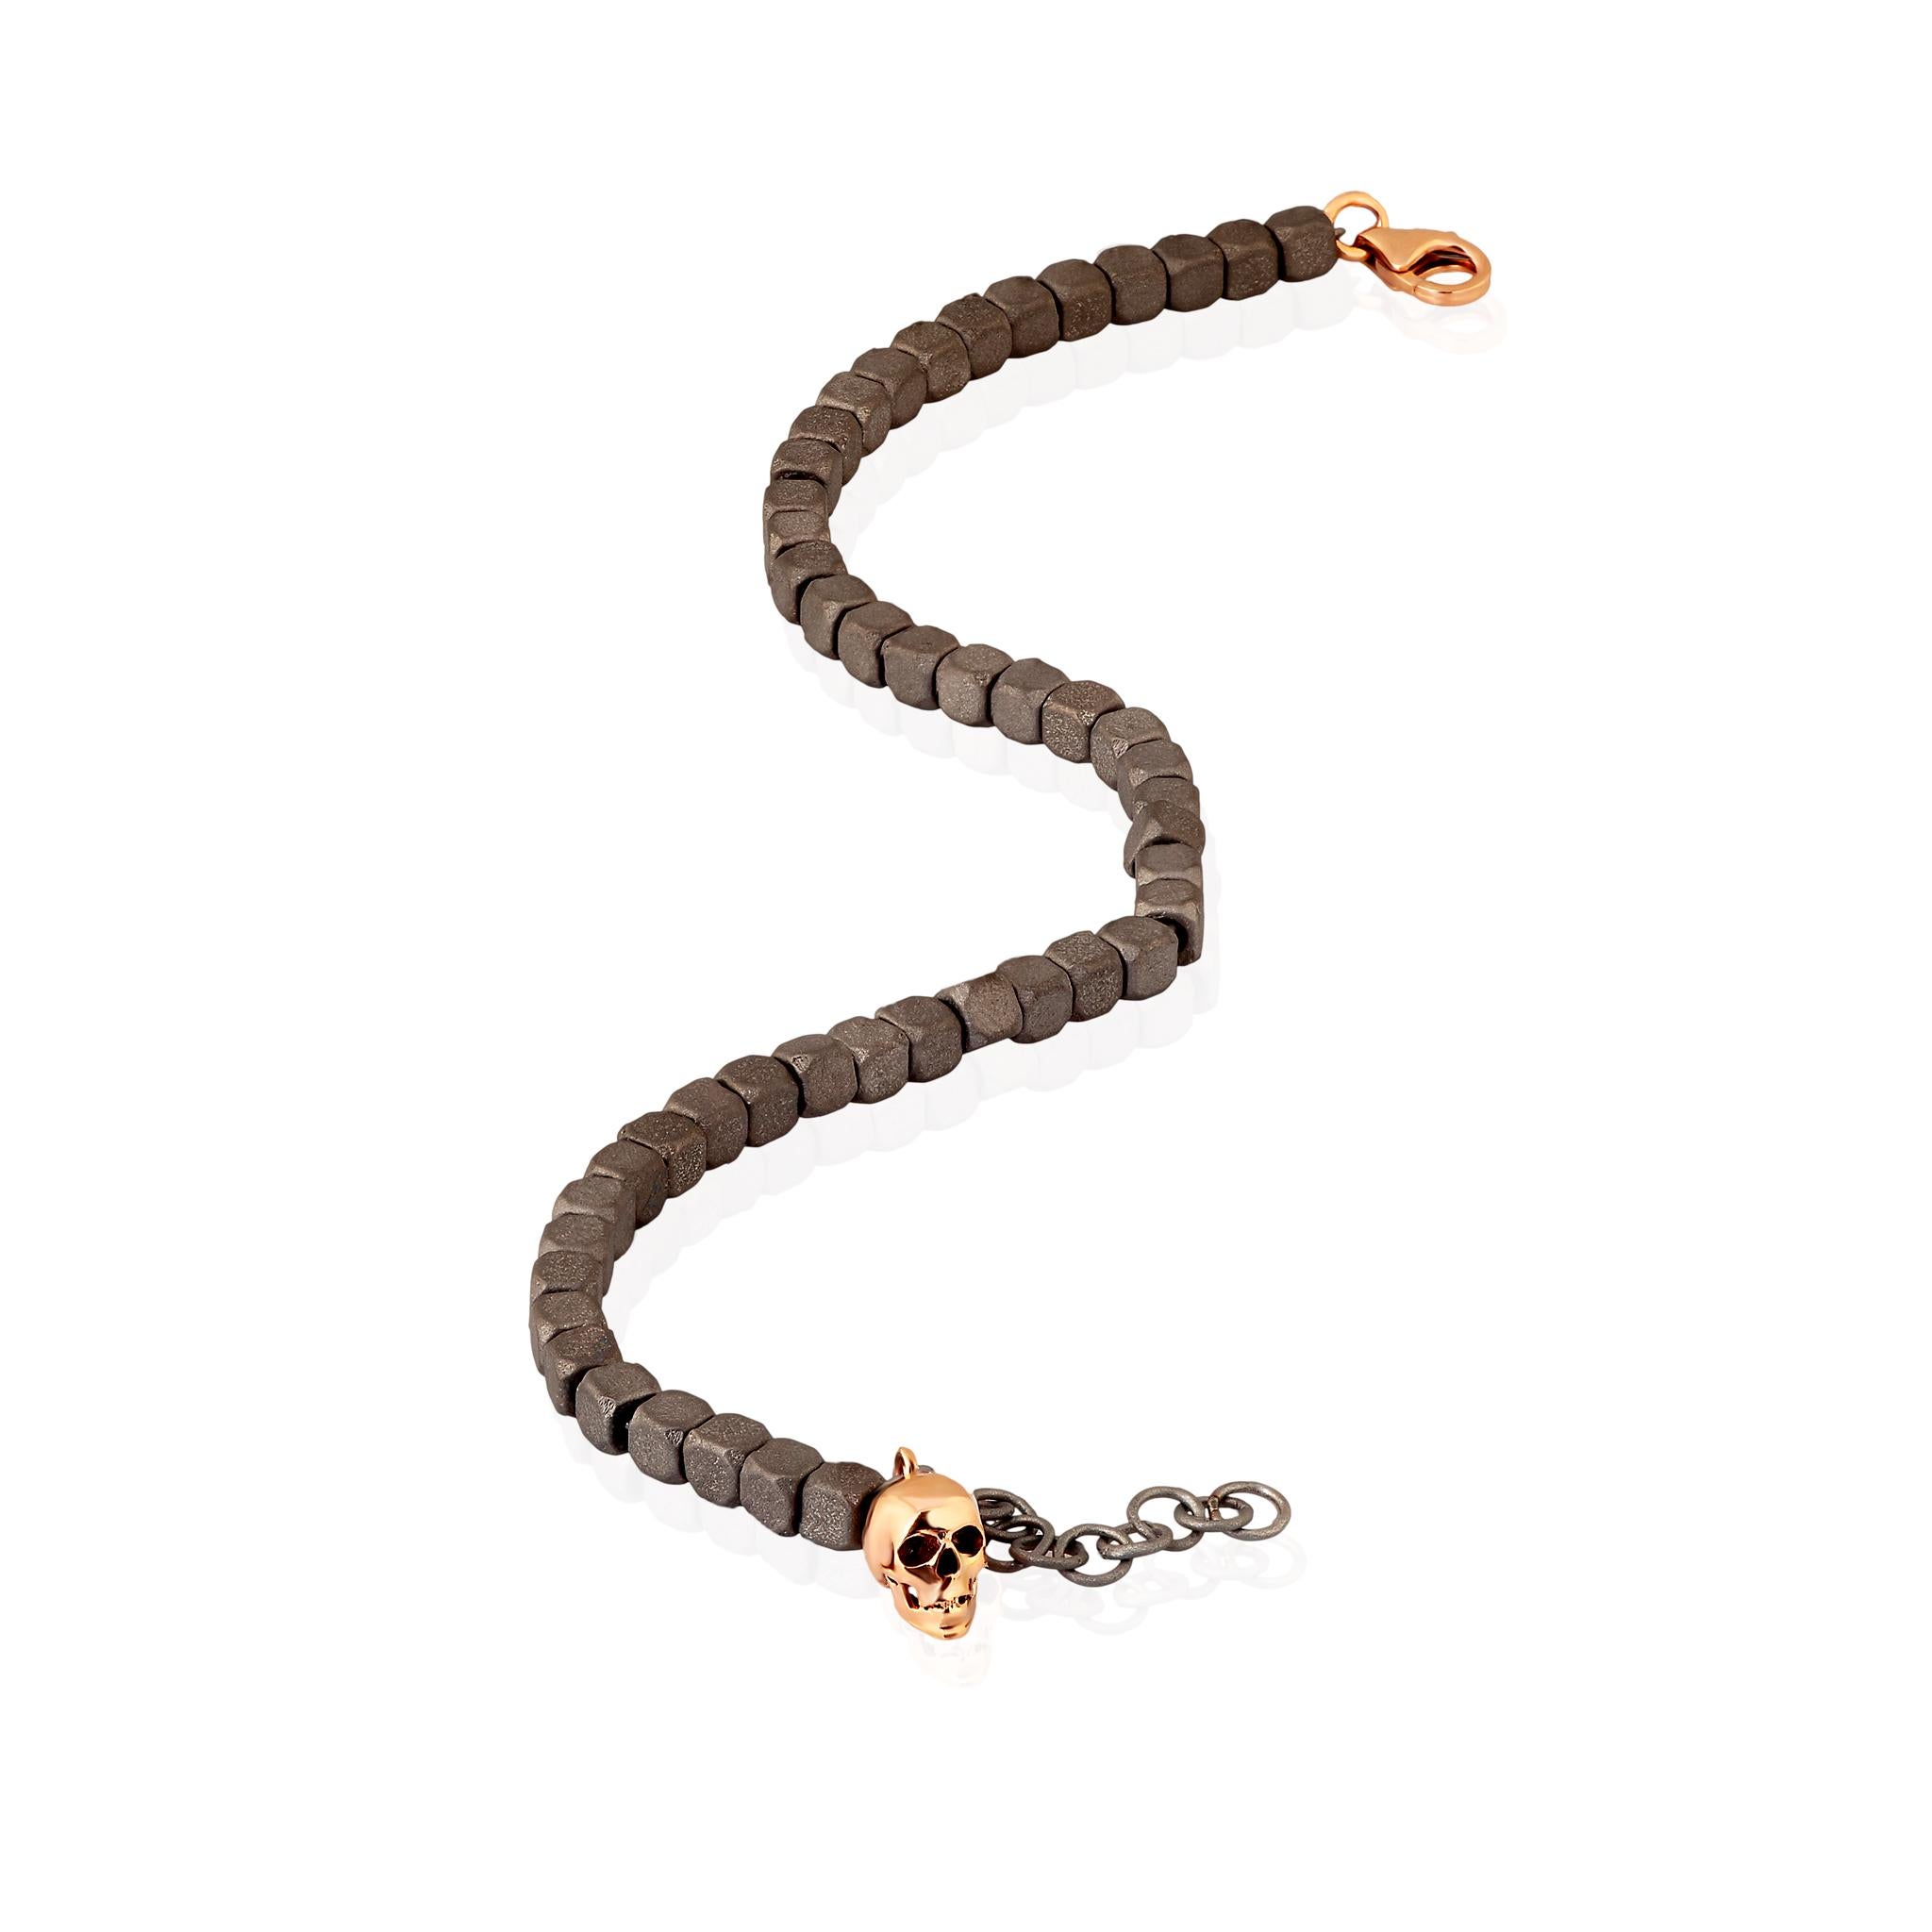 Bracelet en titane pour homme et pendentif tête de mort en or rouge 9 KT. Une série de petits cubes en titane constitue la structure principale du bracelet. Une chaîne traverse toute la section des cubes pour que le bracelet soit solide et mobile.